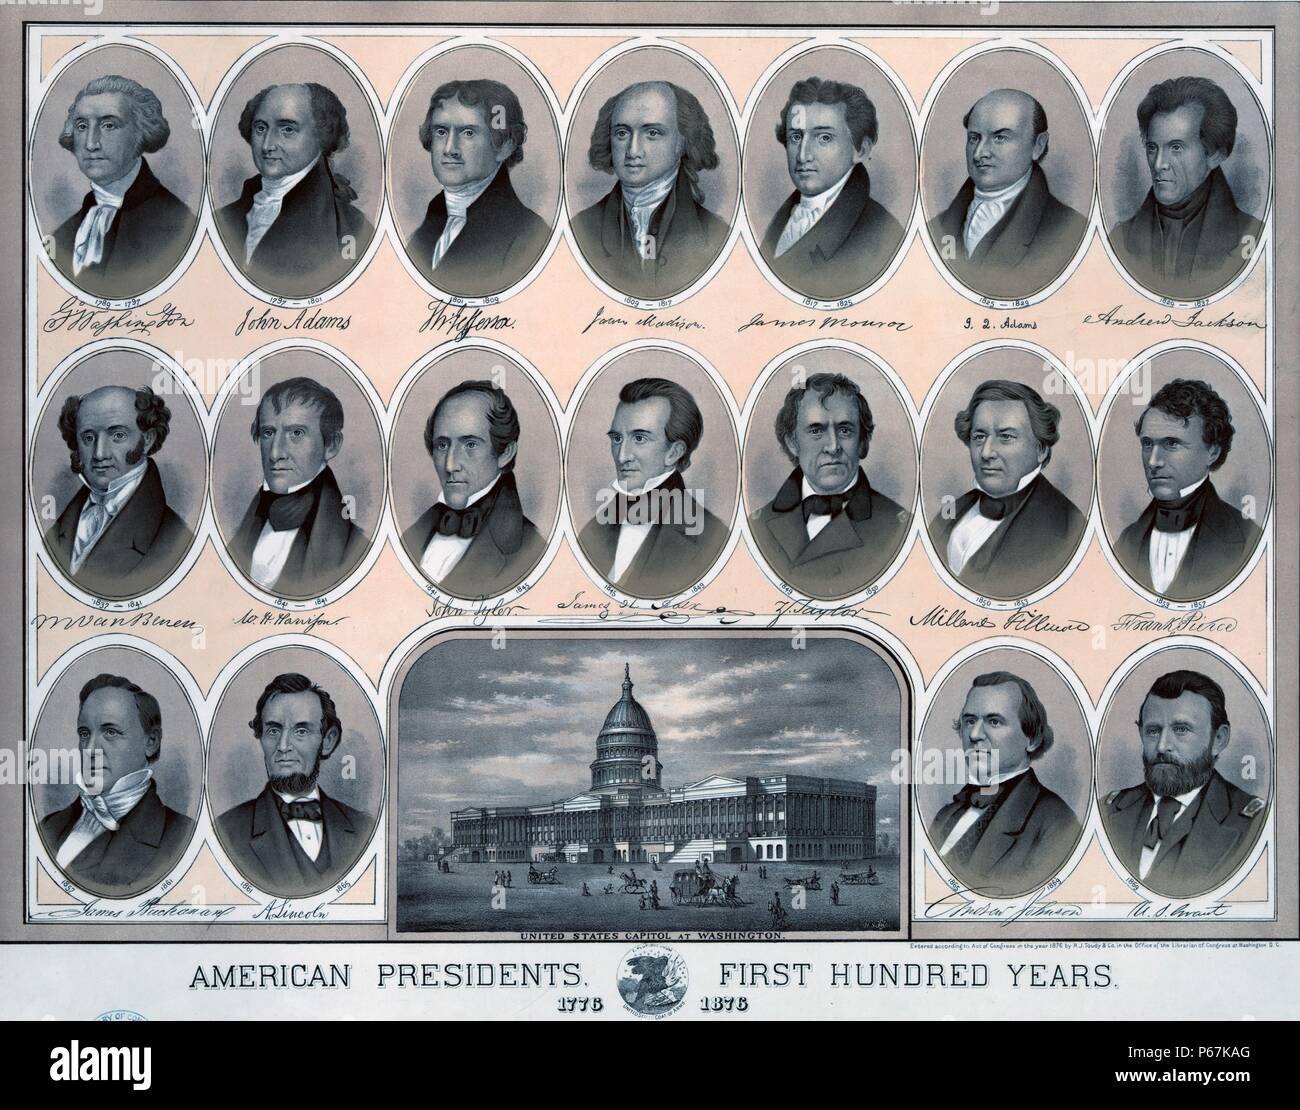 Les présidents américains - cent premières années - 1776-1876' Buste portraits de présidents américains de George Washington à Ulysses S. Grant, avec vue sur le Capitole. Banque D'Images